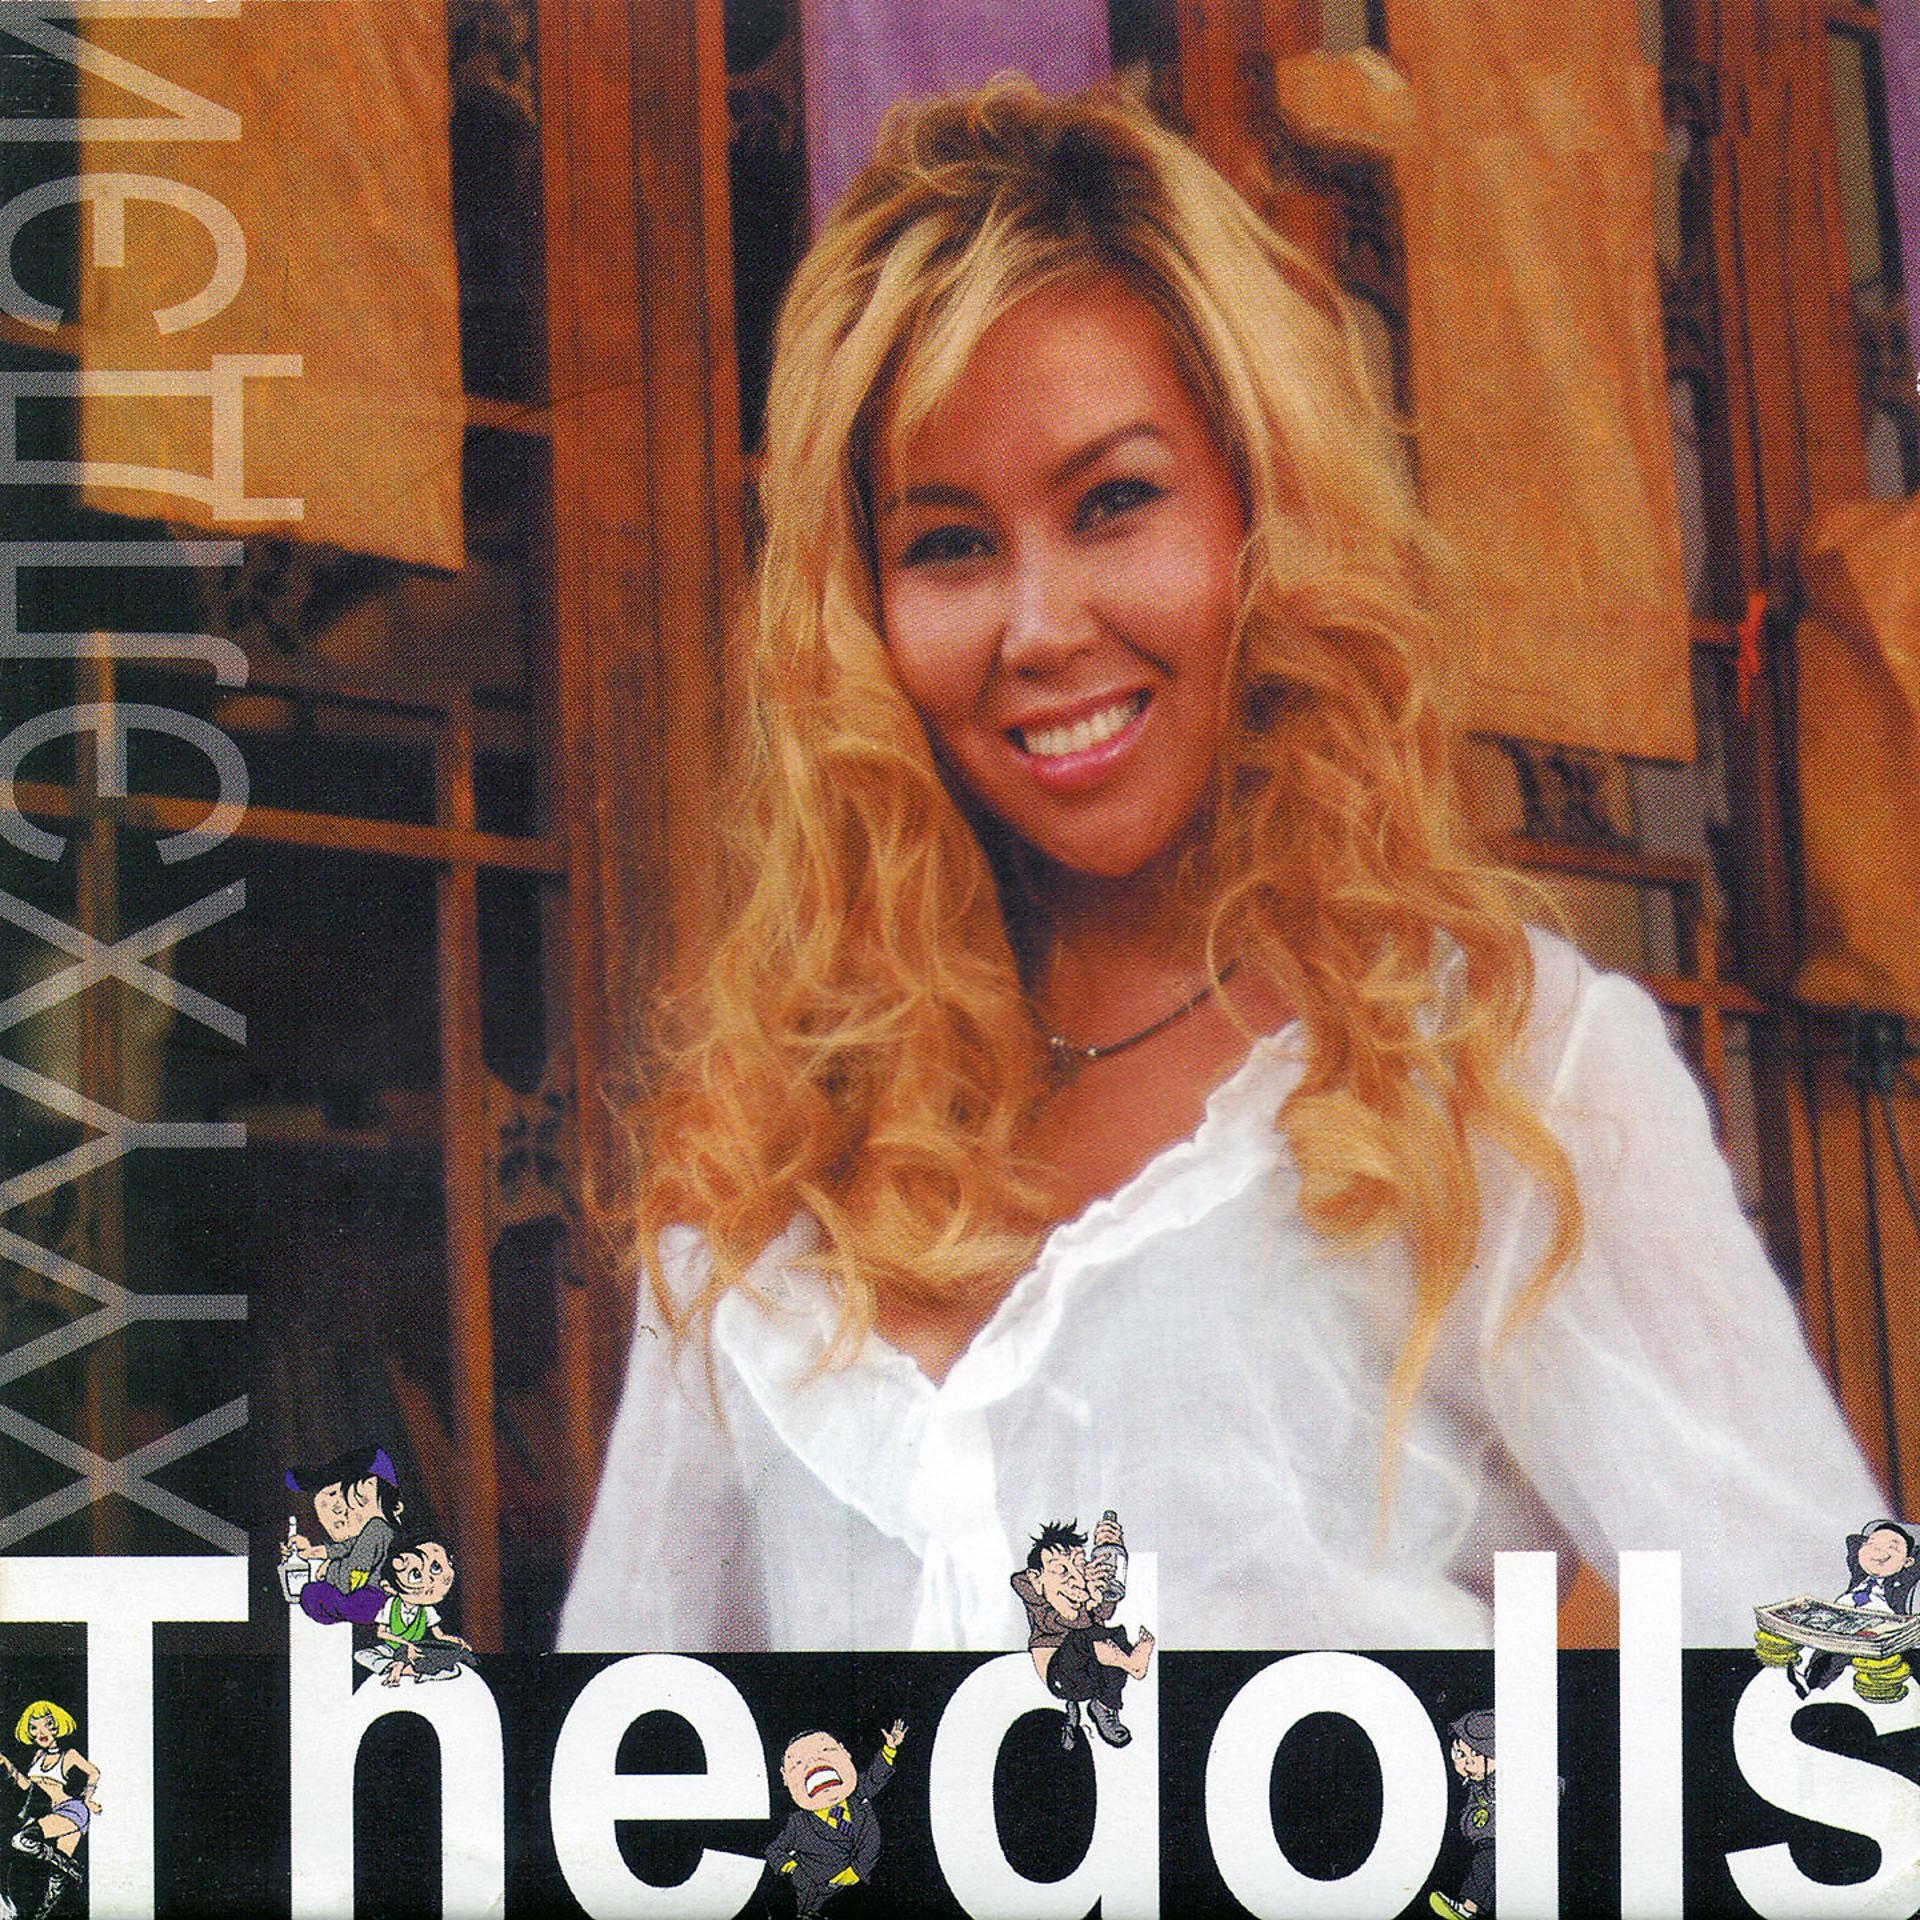 Постер альбома The Dolls